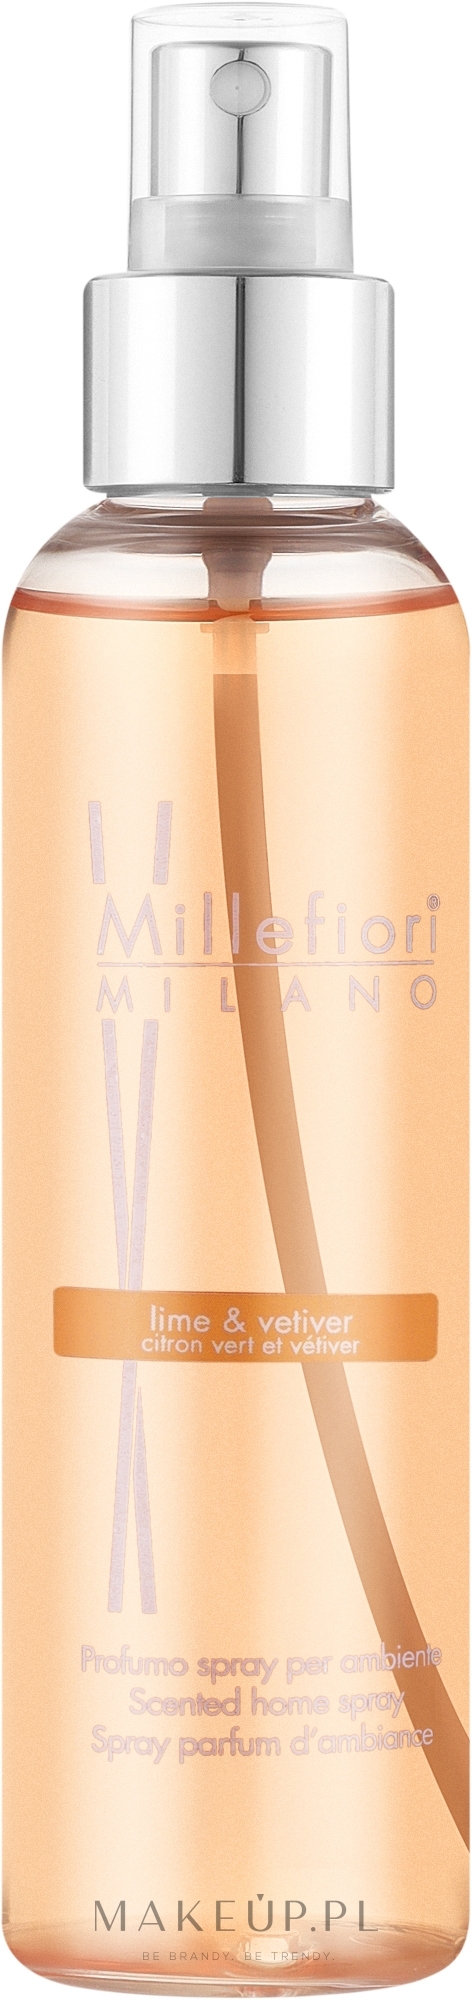 Aromatyczny spray do domu Lime & Vetiver - Millefiori Milano Natural Lime & Vetiver Home Spray — Zdjęcie 150 ml